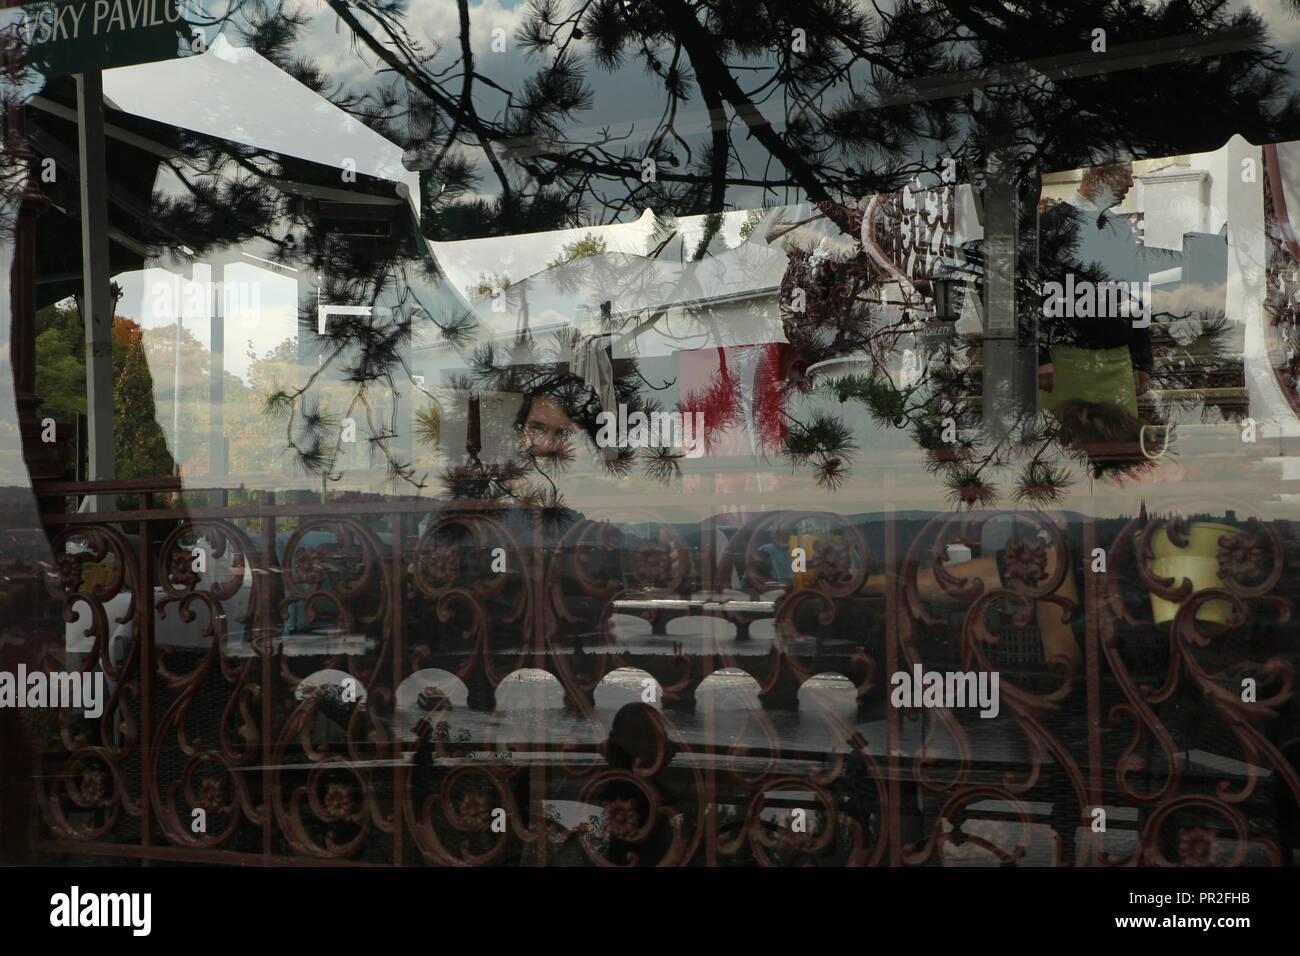 Die Menschen in der Hanavský Pavilon Restaurant in Letná Park (letenské Sady) in Prag, Tschechische Republik, dargestellt durch die Reflexion einer Kiefer und Brücken über die Moldau im Restaurant Fenster. Stockfoto